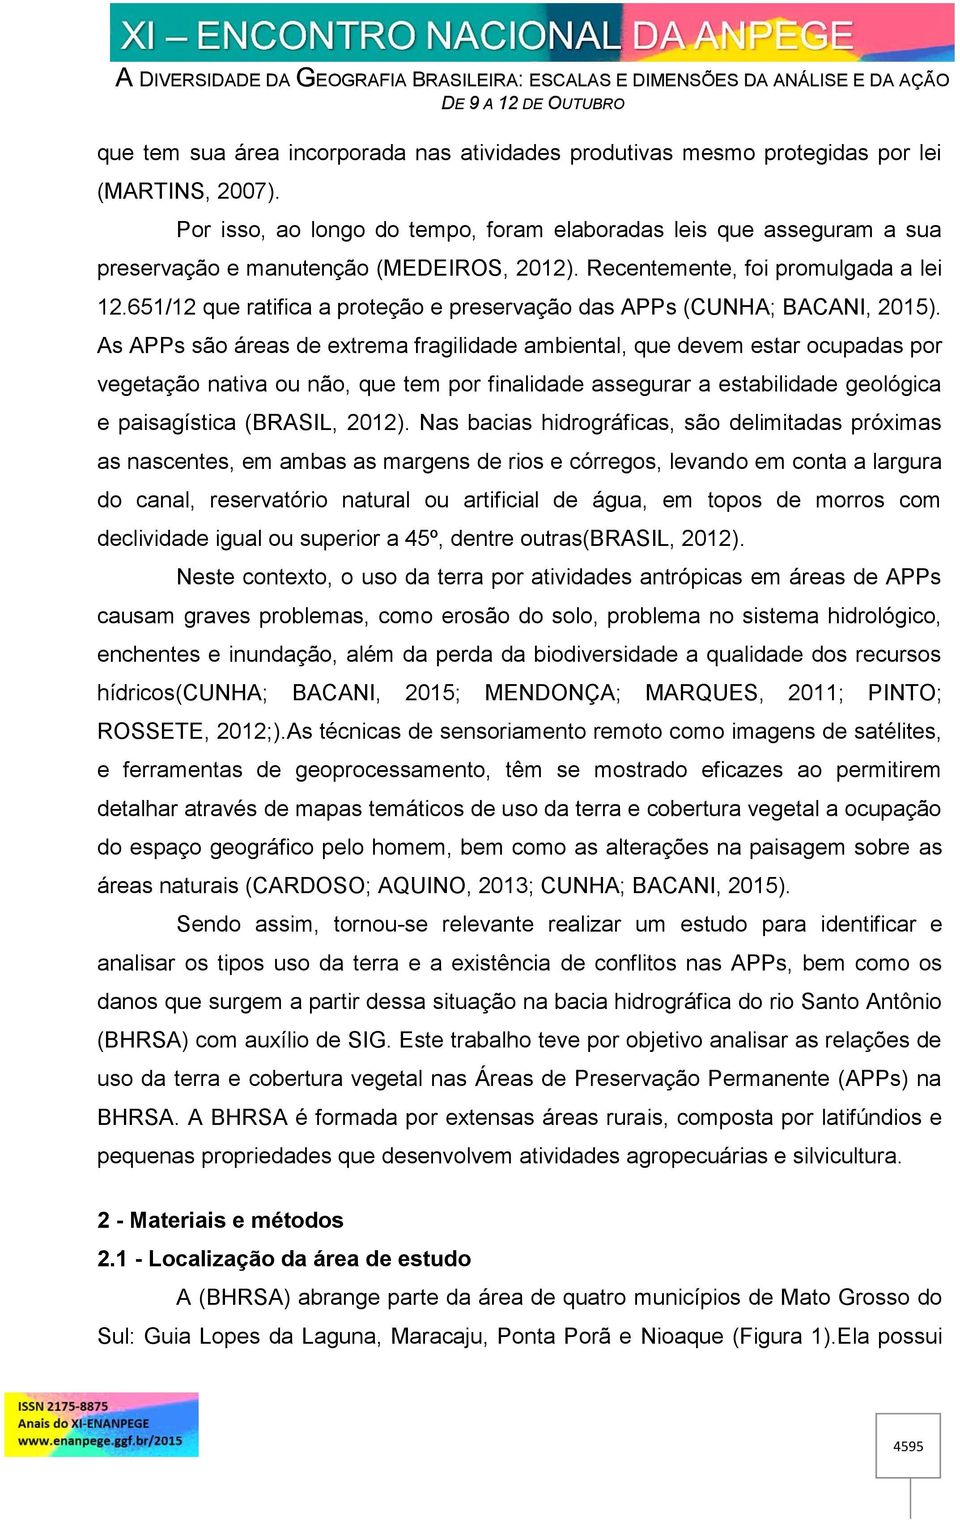 651/12 que ratifica a proteção e preservação das APPs (CUNHA; BACANI, 2015).